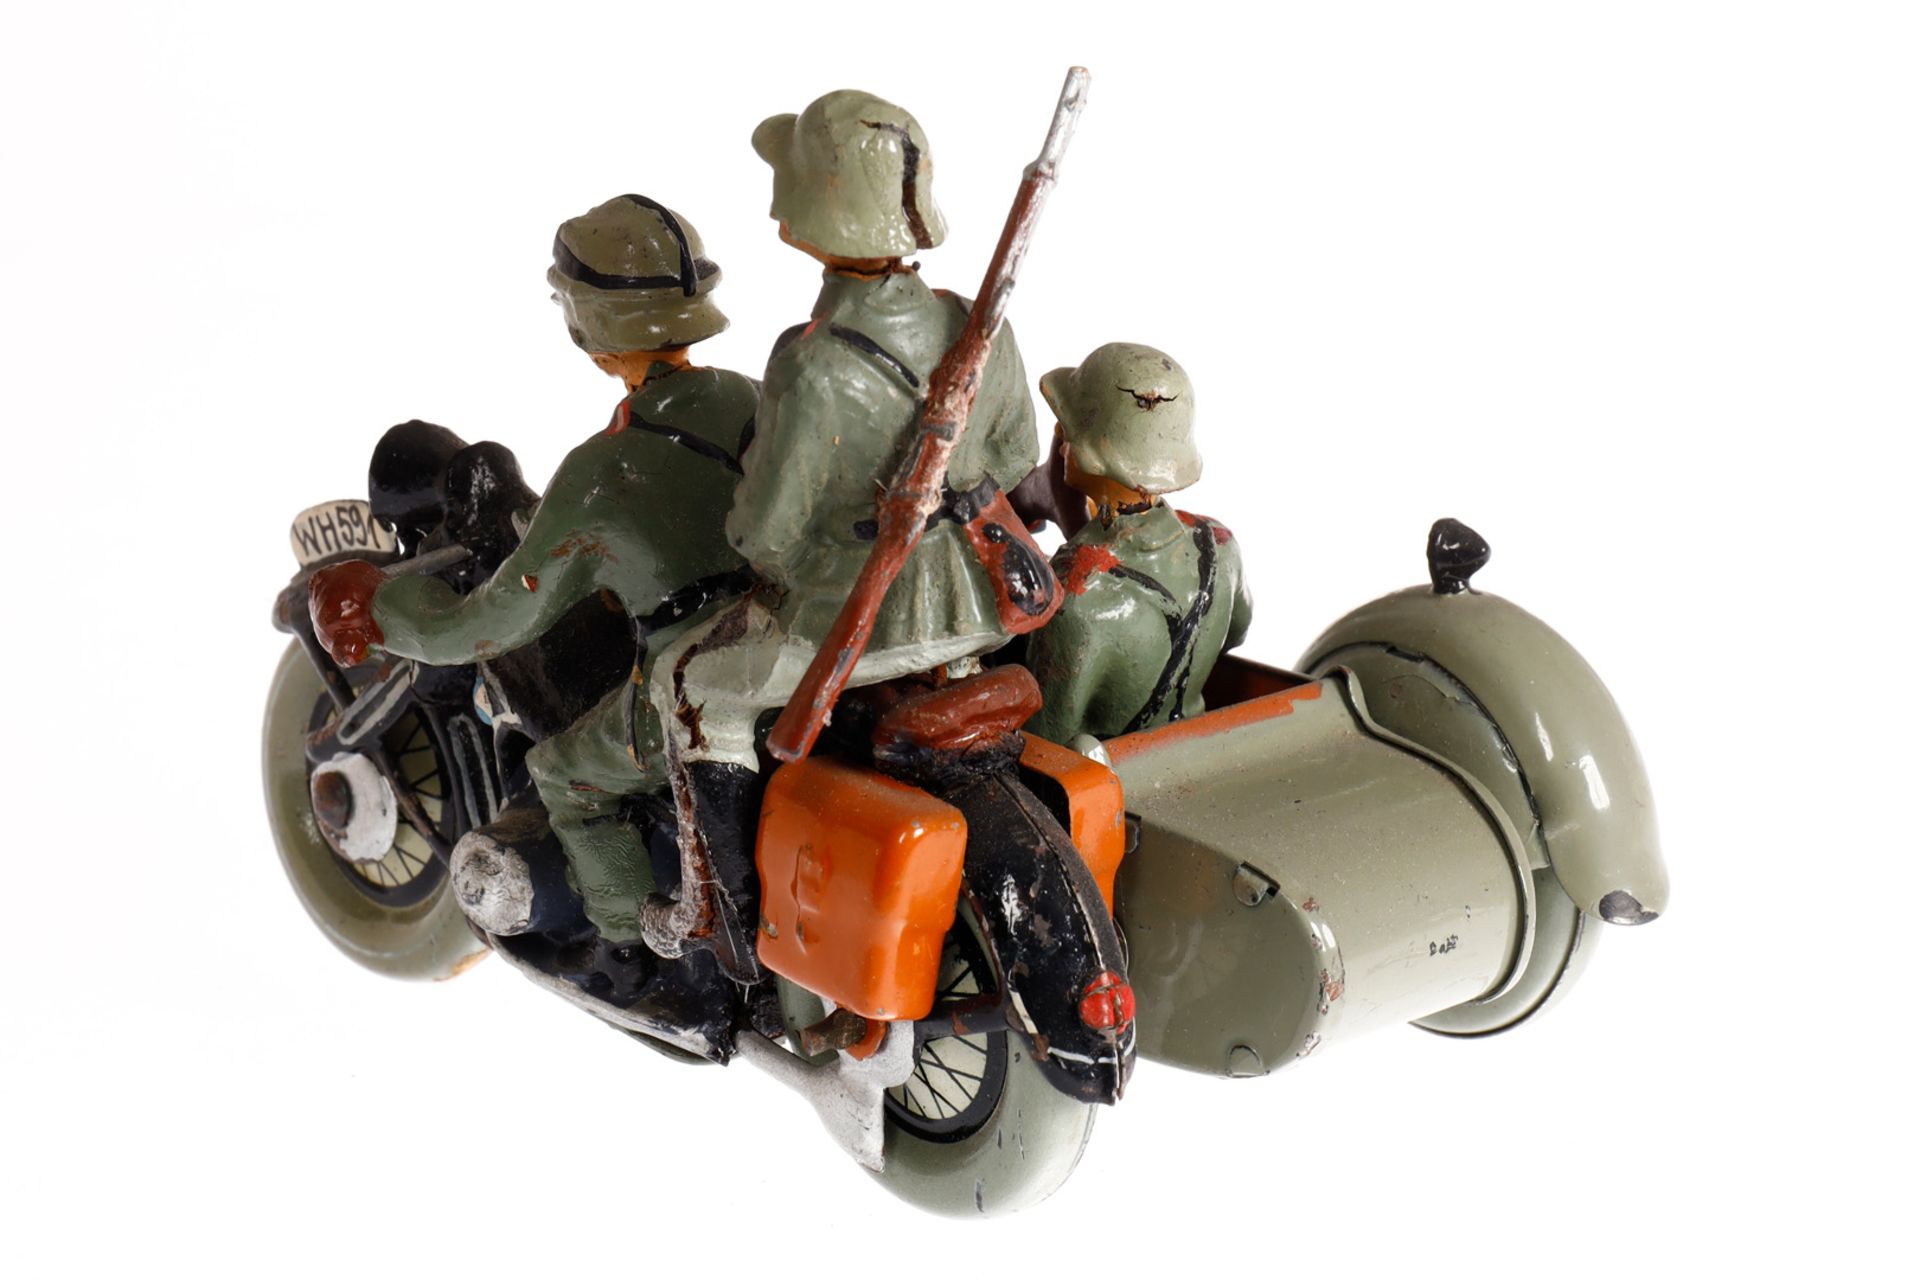 Militärmotorrad mit Fahrer, Sozius und Beiwagen mit Soldat an MG, L 10, Z 2 - Image 2 of 2